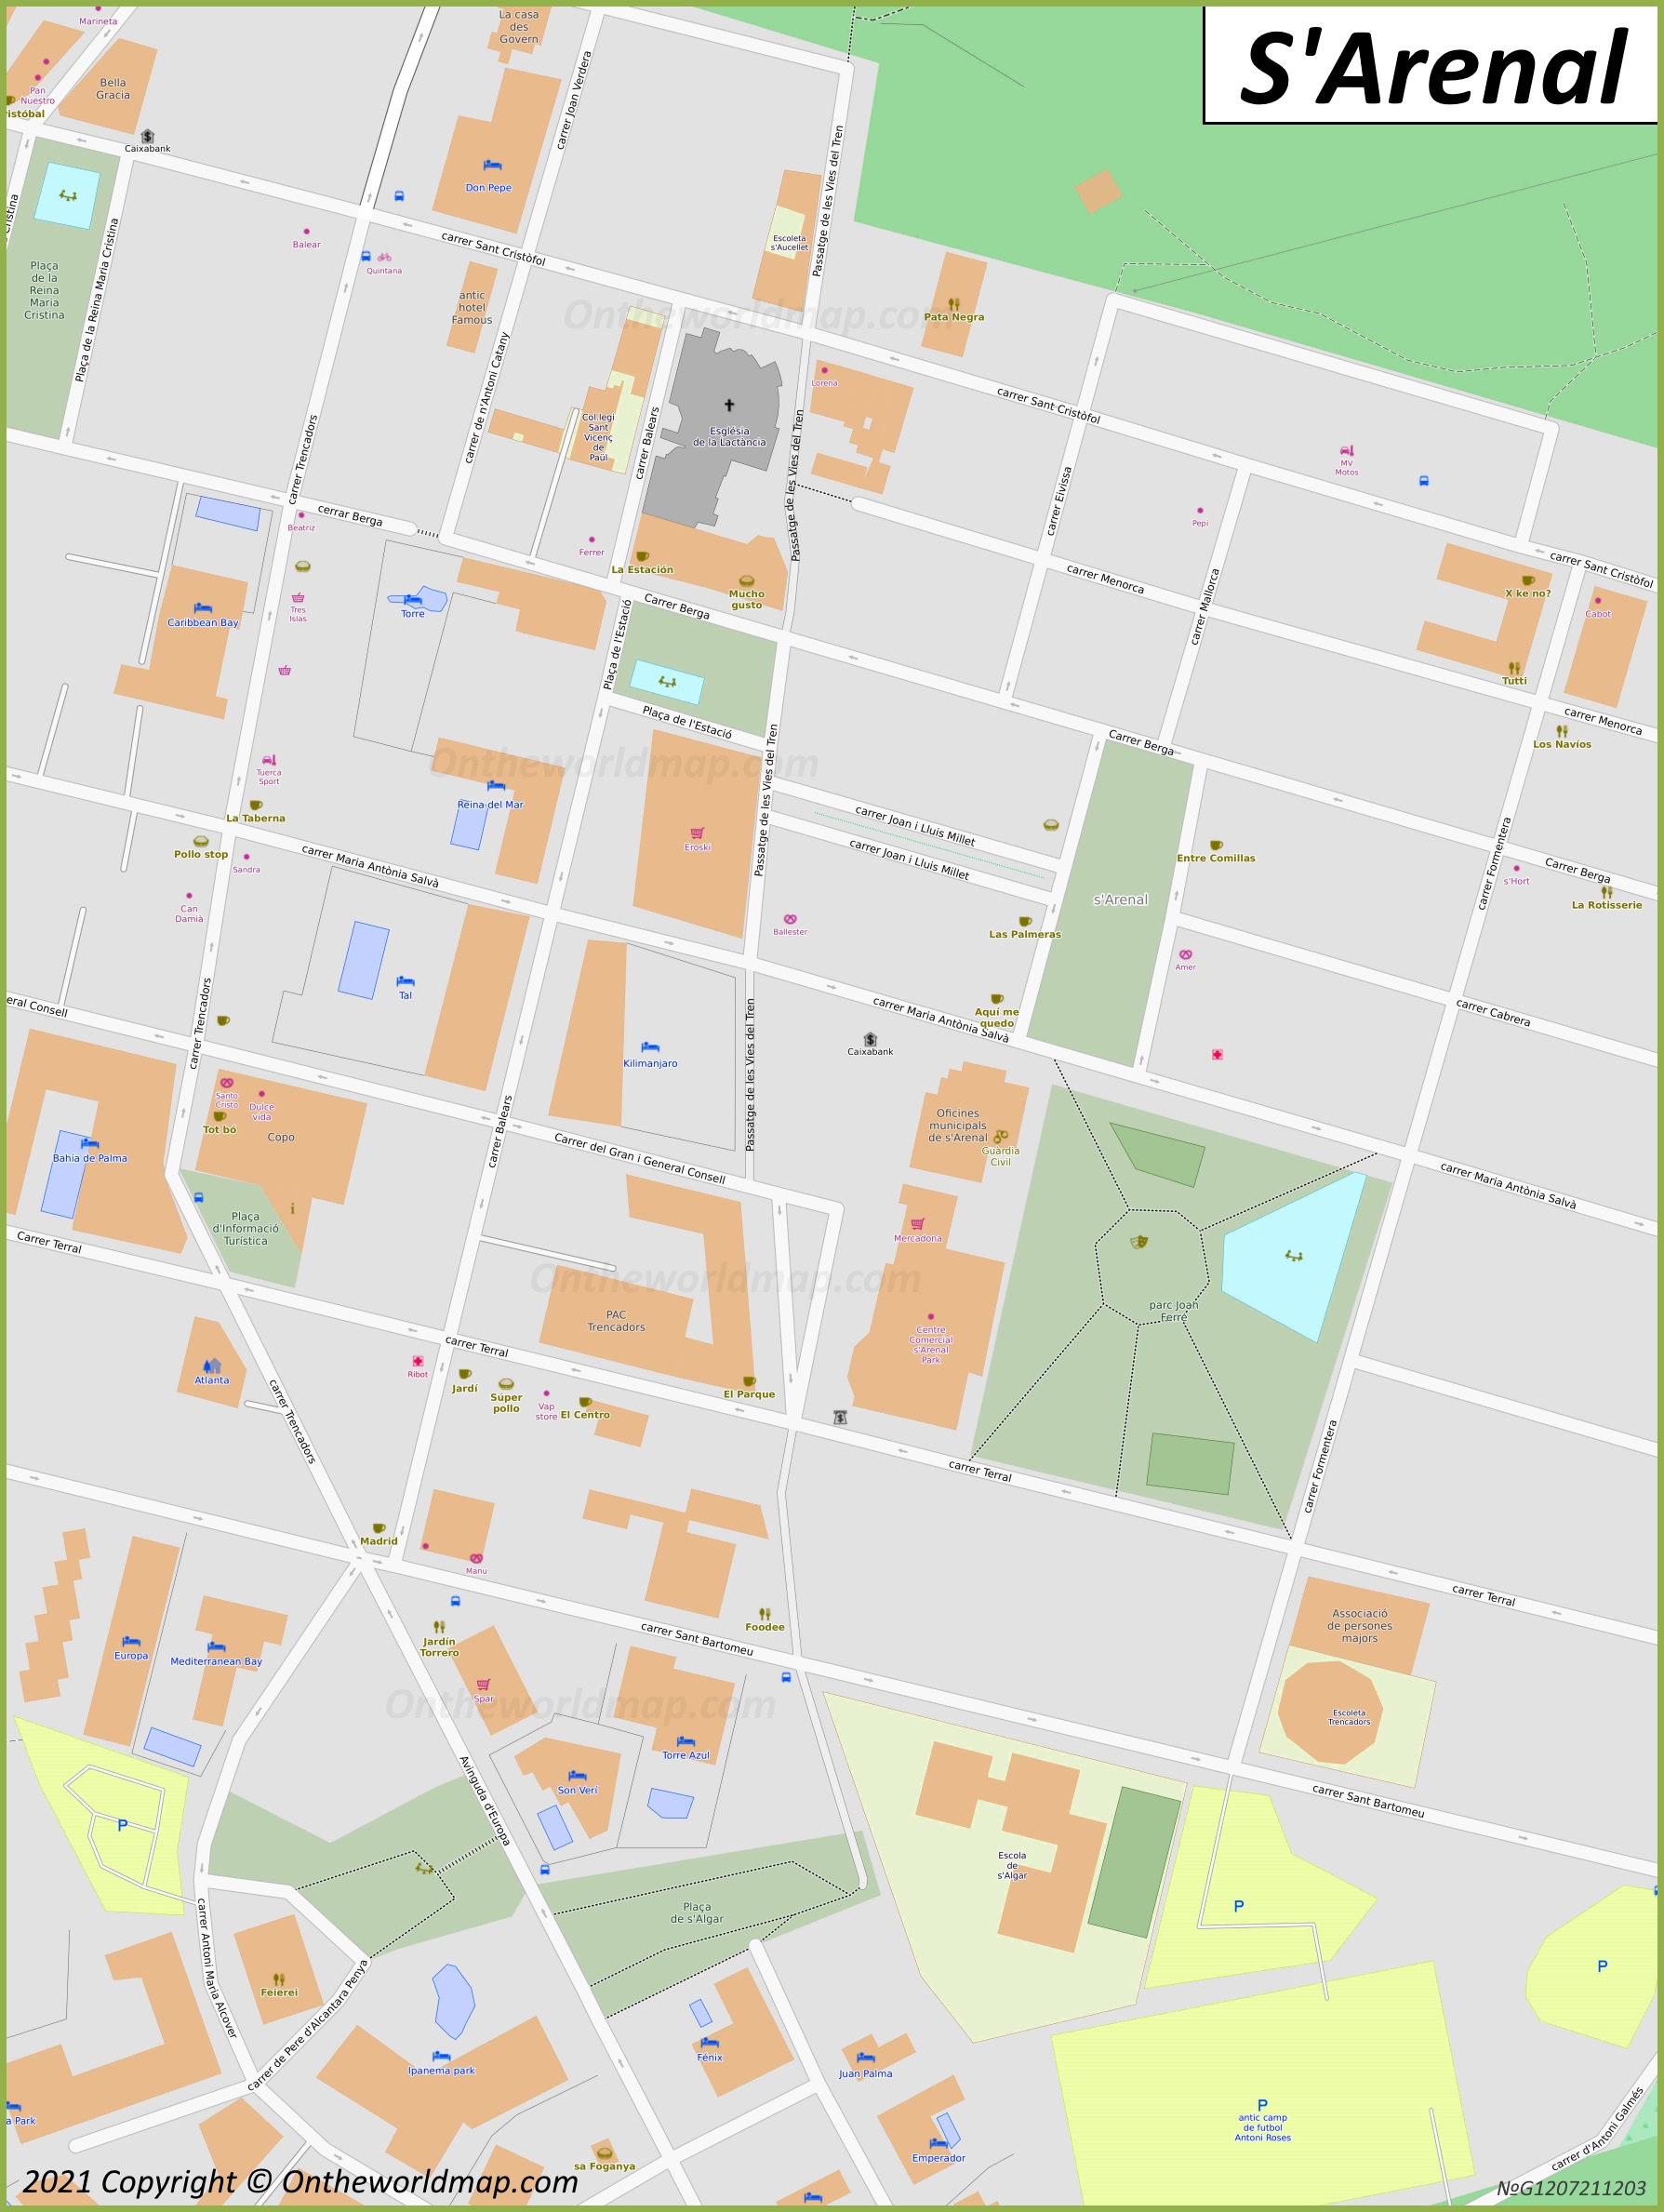 El Arenal - Mapa de la Ciudad Vieja